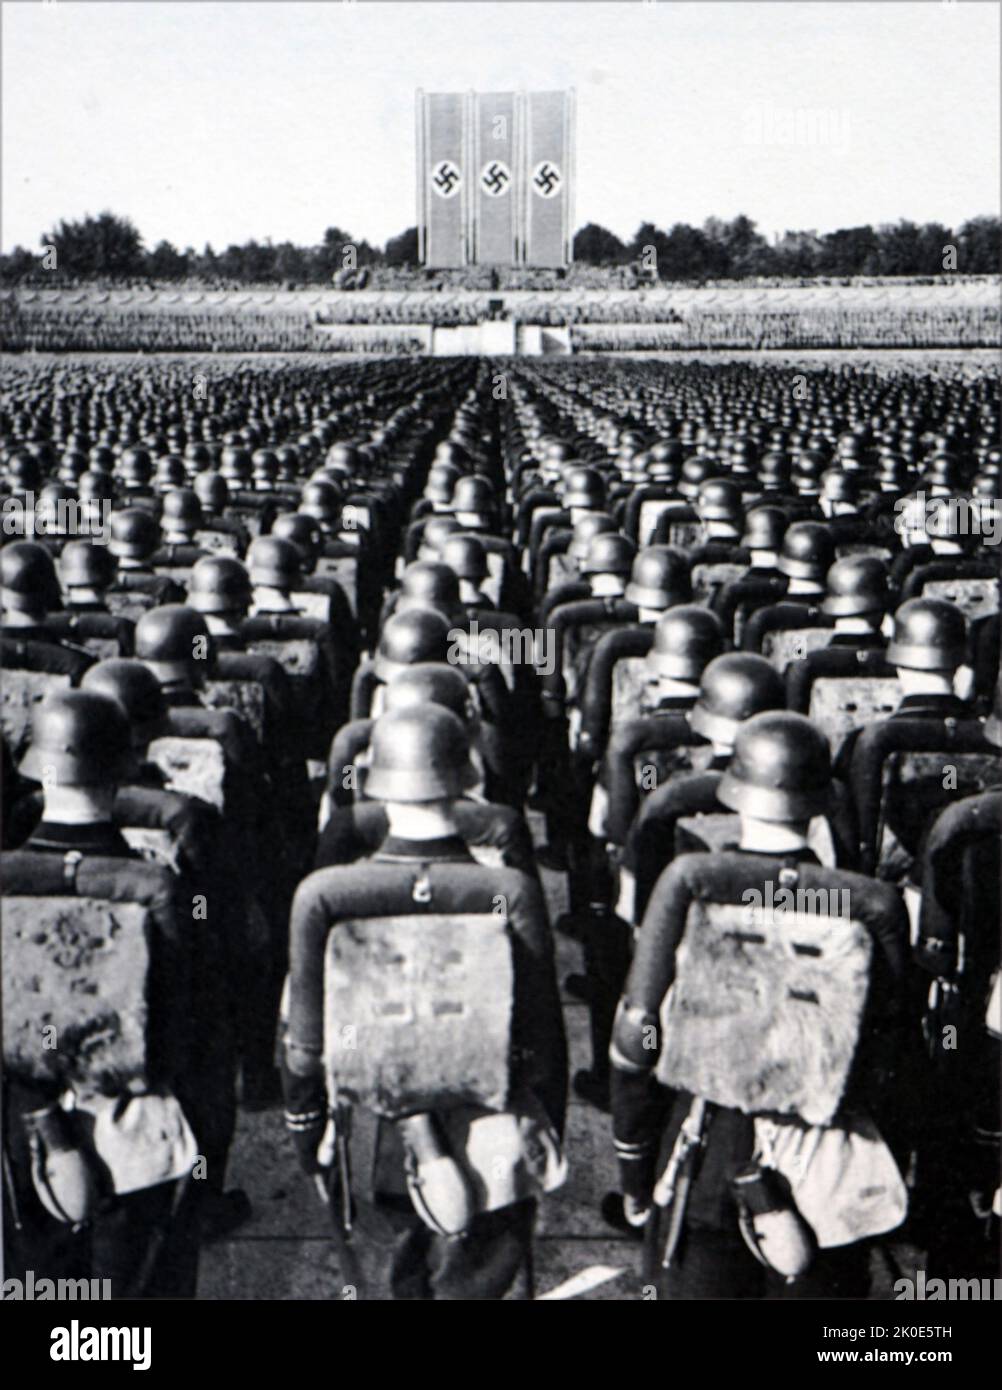 Die Nürnberger Kundgebung war die jährliche Kundgebung der Nazi-Partei in Deutschland, die von 1923 bis 1938 stattfand. Es handelte sich um große Propagandaveranstaltungen der Nazis, insbesondere nach dem Aufstieg Adolf Hitlers zur Macht im Jahr 1933. Diese Ereignisse fanden von 1933 bis 1938 auf dem Gelände der Reichsparteienversammlung in Nürnberg statt. Stockfoto